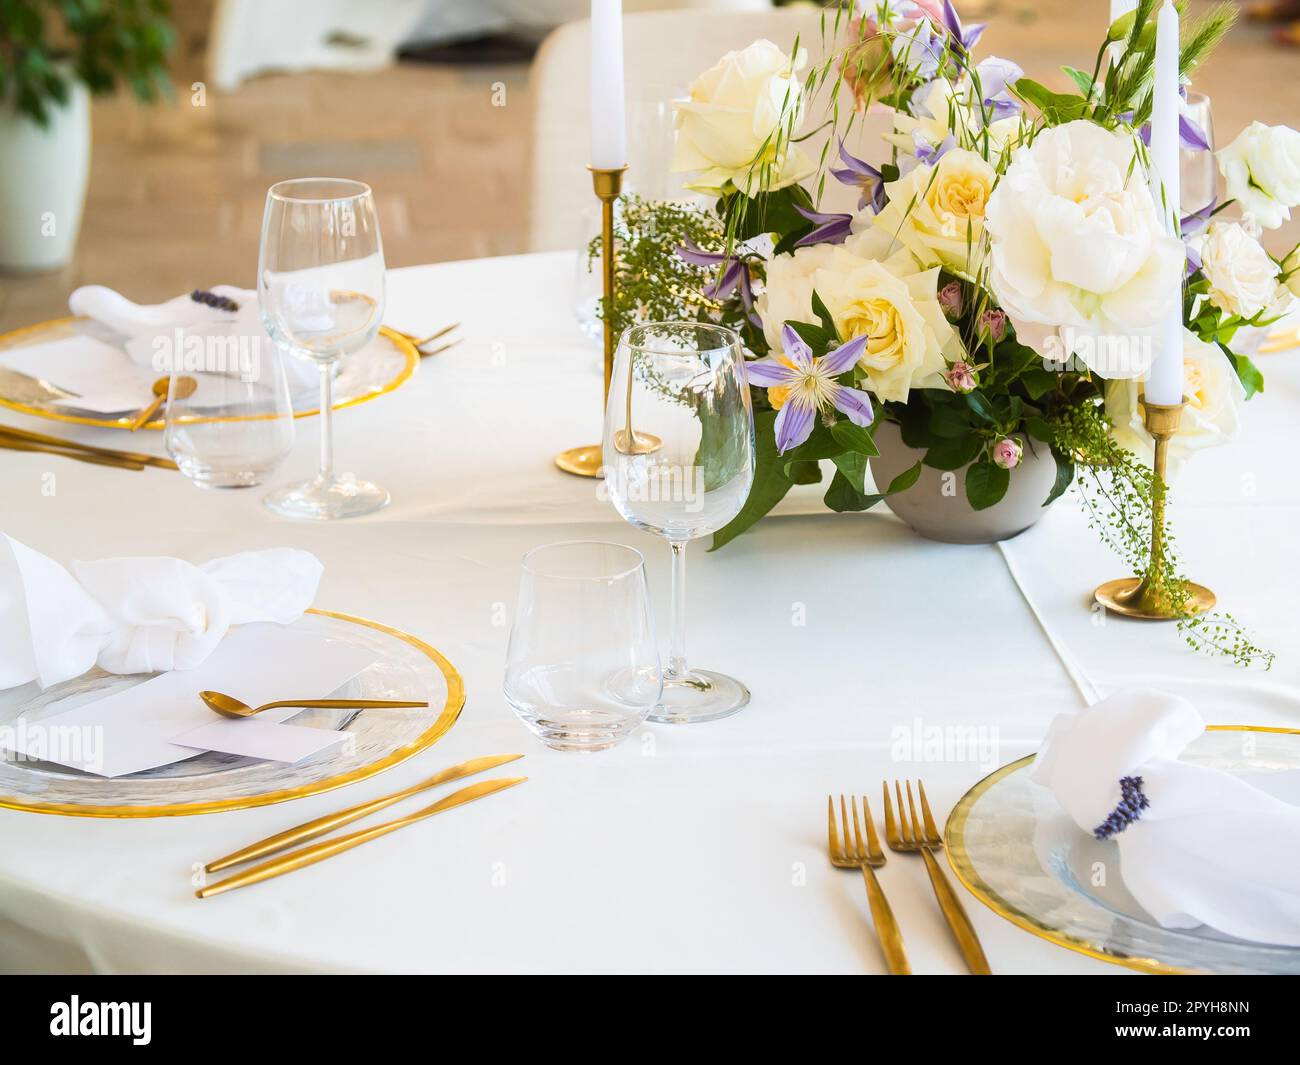 https://c8.alamy.com/compes/2pyh8nn/concepto-de-banquete-de-boda-sillas-y-mesa-redonda-para-invitados-servidos-con-cutler-y-flores-y-vajilla-y-cubiertos-con-un-mantel-2pyh8nn.jpg